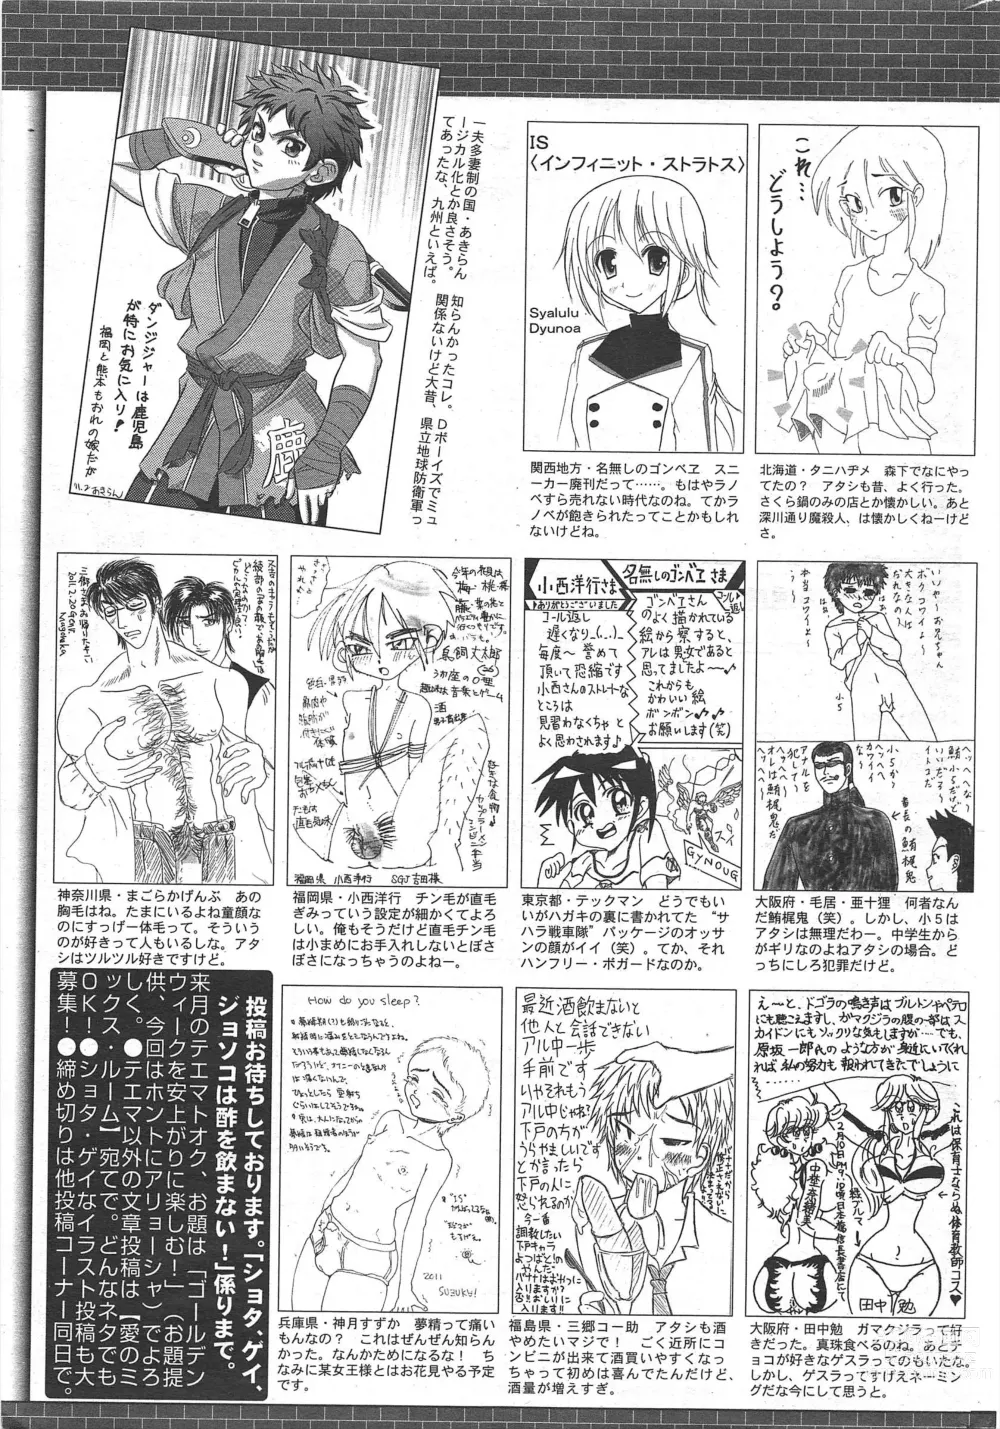 Page 265 of manga Manga Bangaichi 2011-05